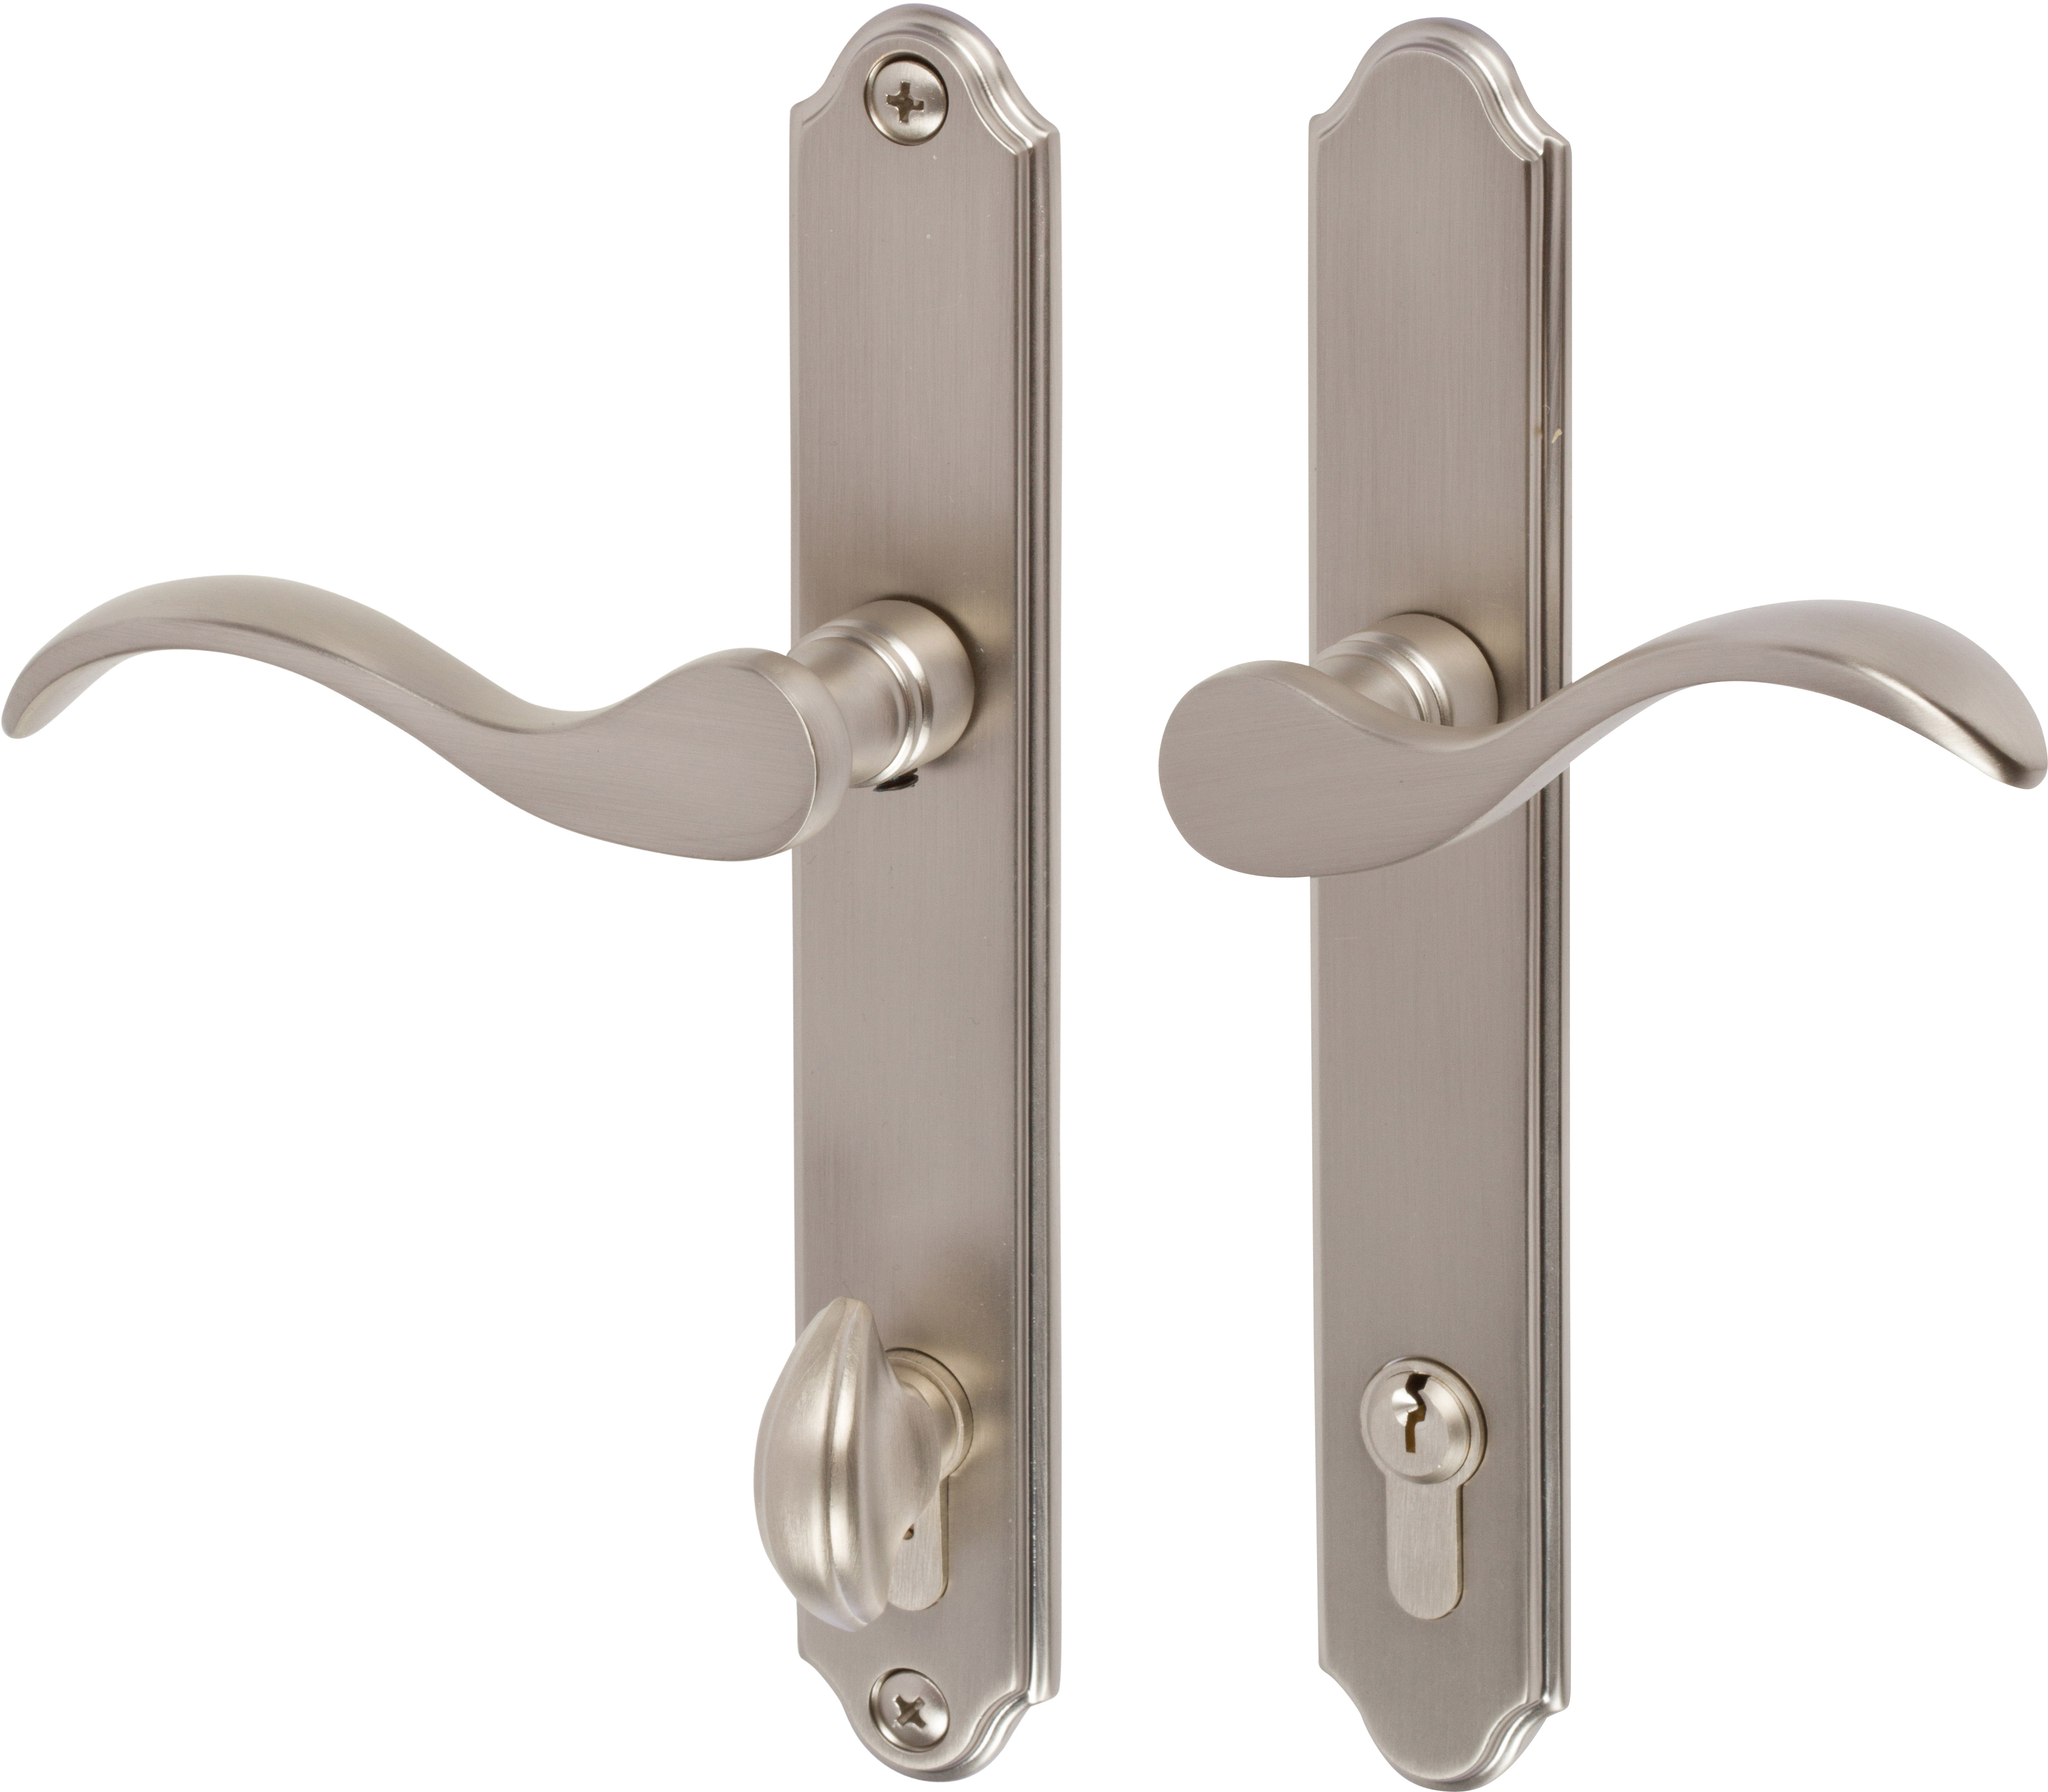 Brushed Nickel Door Handle With Lock - Image to u